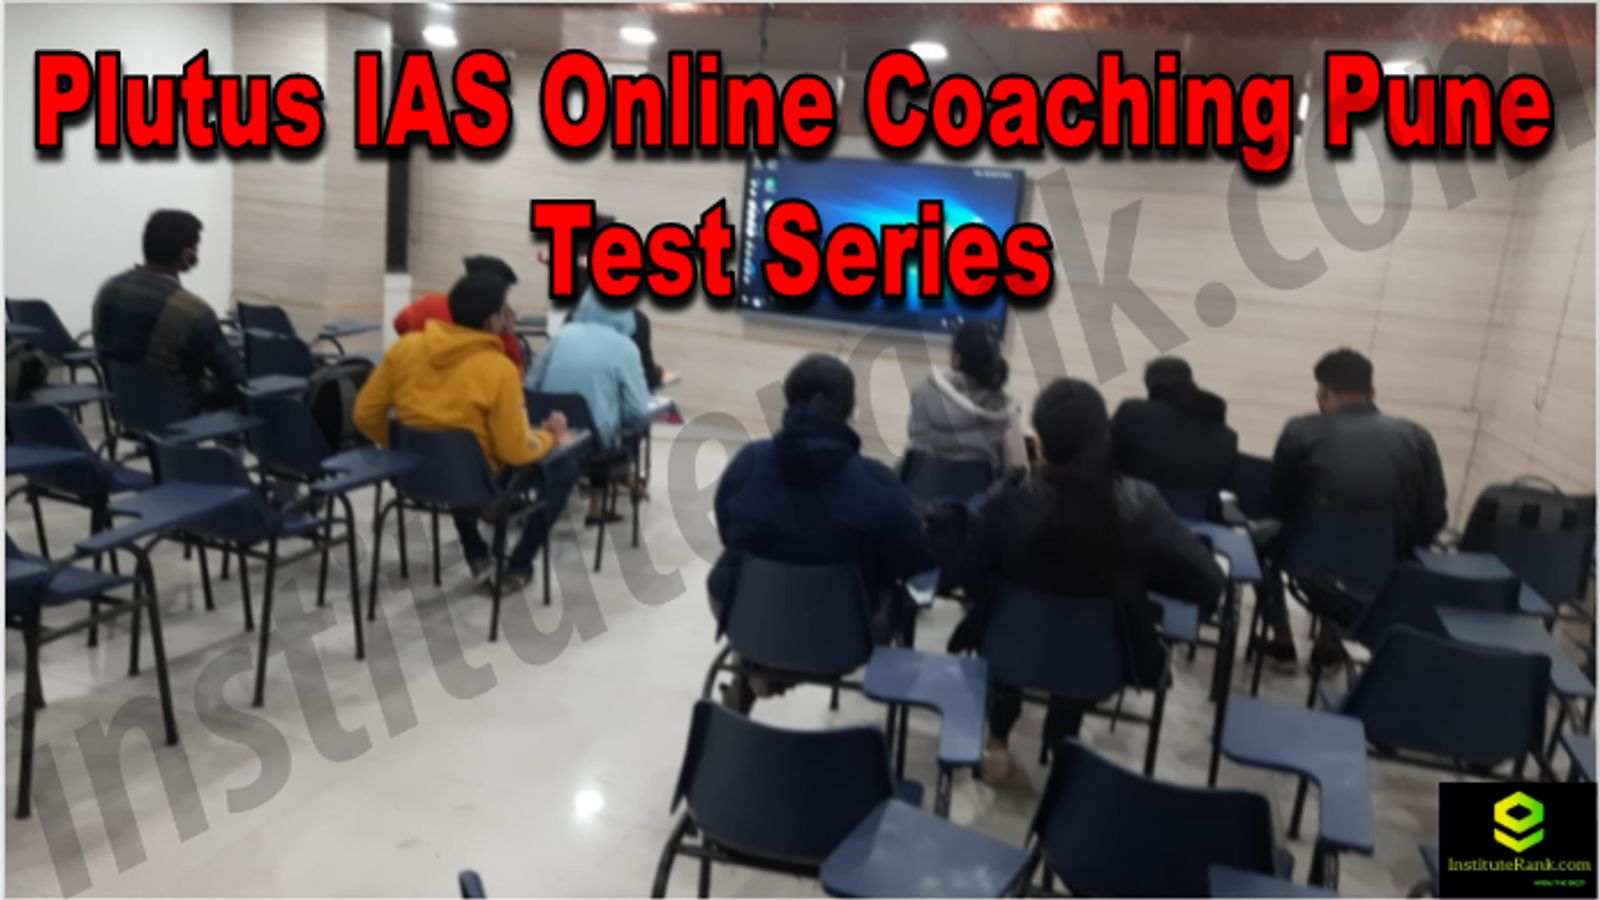 Plutus IAS Online Coaching Pune Reviews Test Series